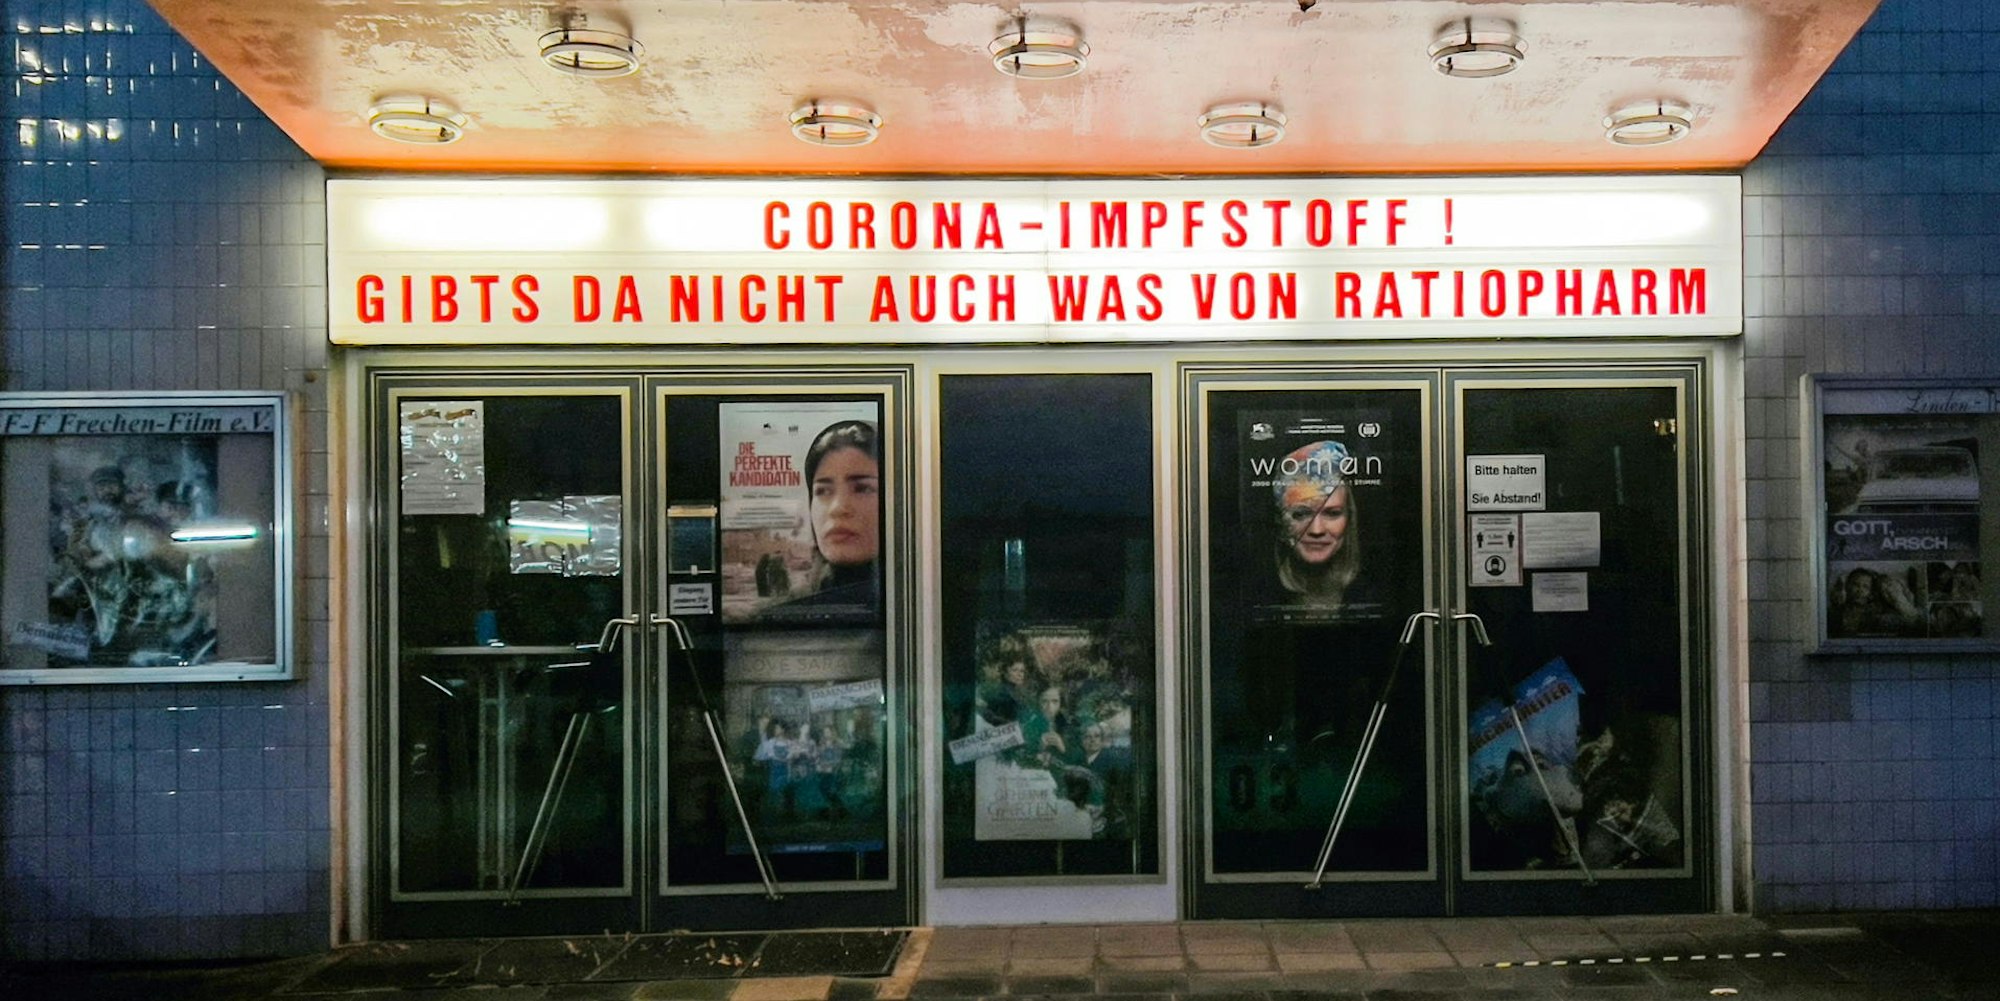 Das Linden-Theater in Frechen hat wieder einen neuen Corona-Slogan über dem Eingang.